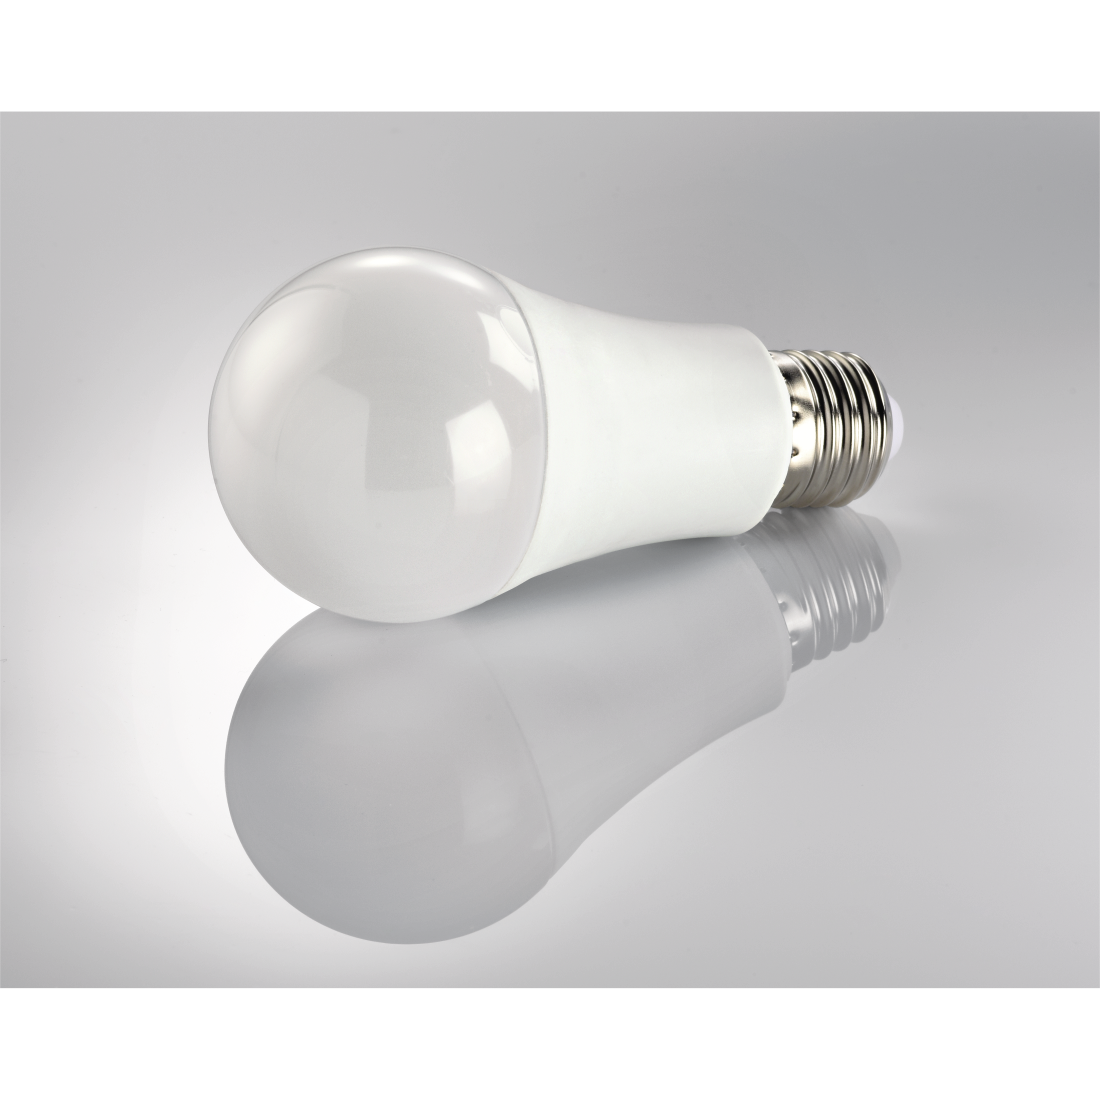 abx3 Druckfähige Abbildung 3 - Xavax, LED-Lampe, E27, 800lm ersetzt 60W, Glühlampe, Warm-/Neutralweiß/Tageslicht